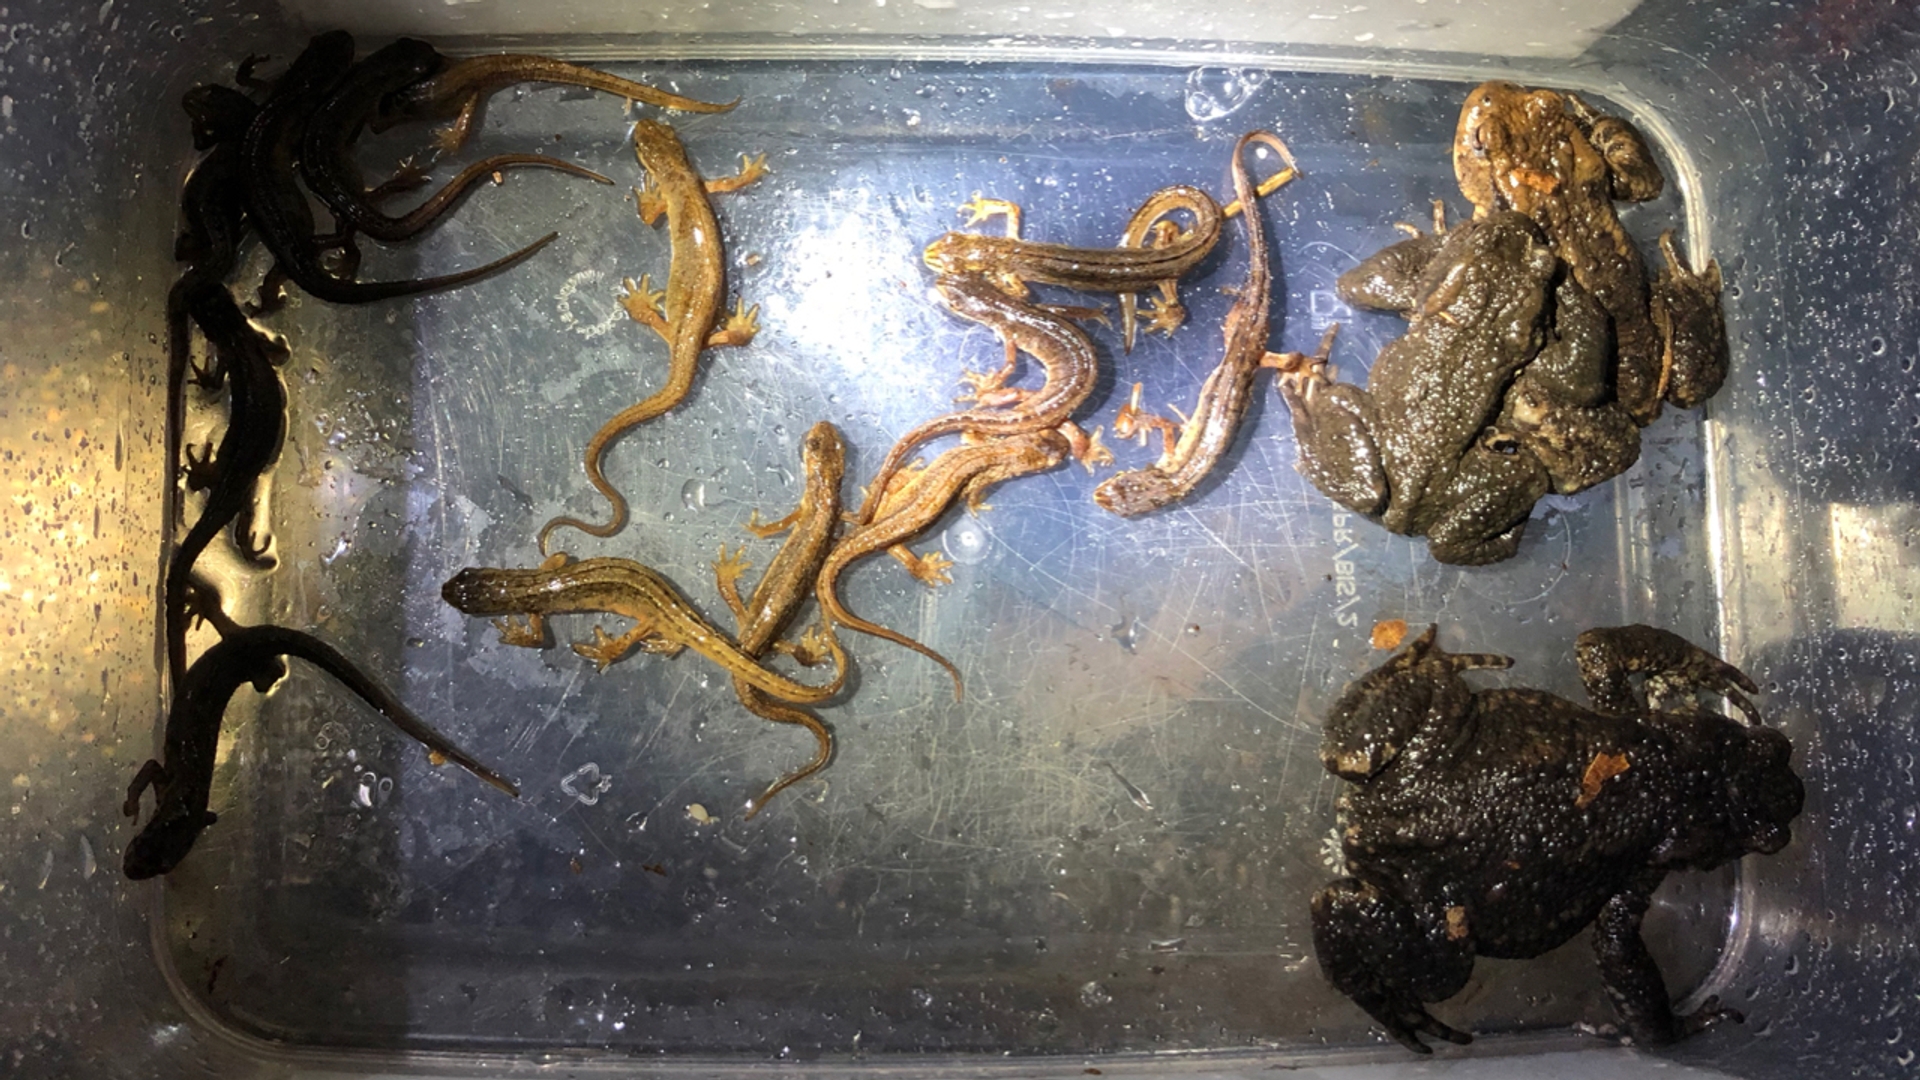 Kleine watersalamanders en padden